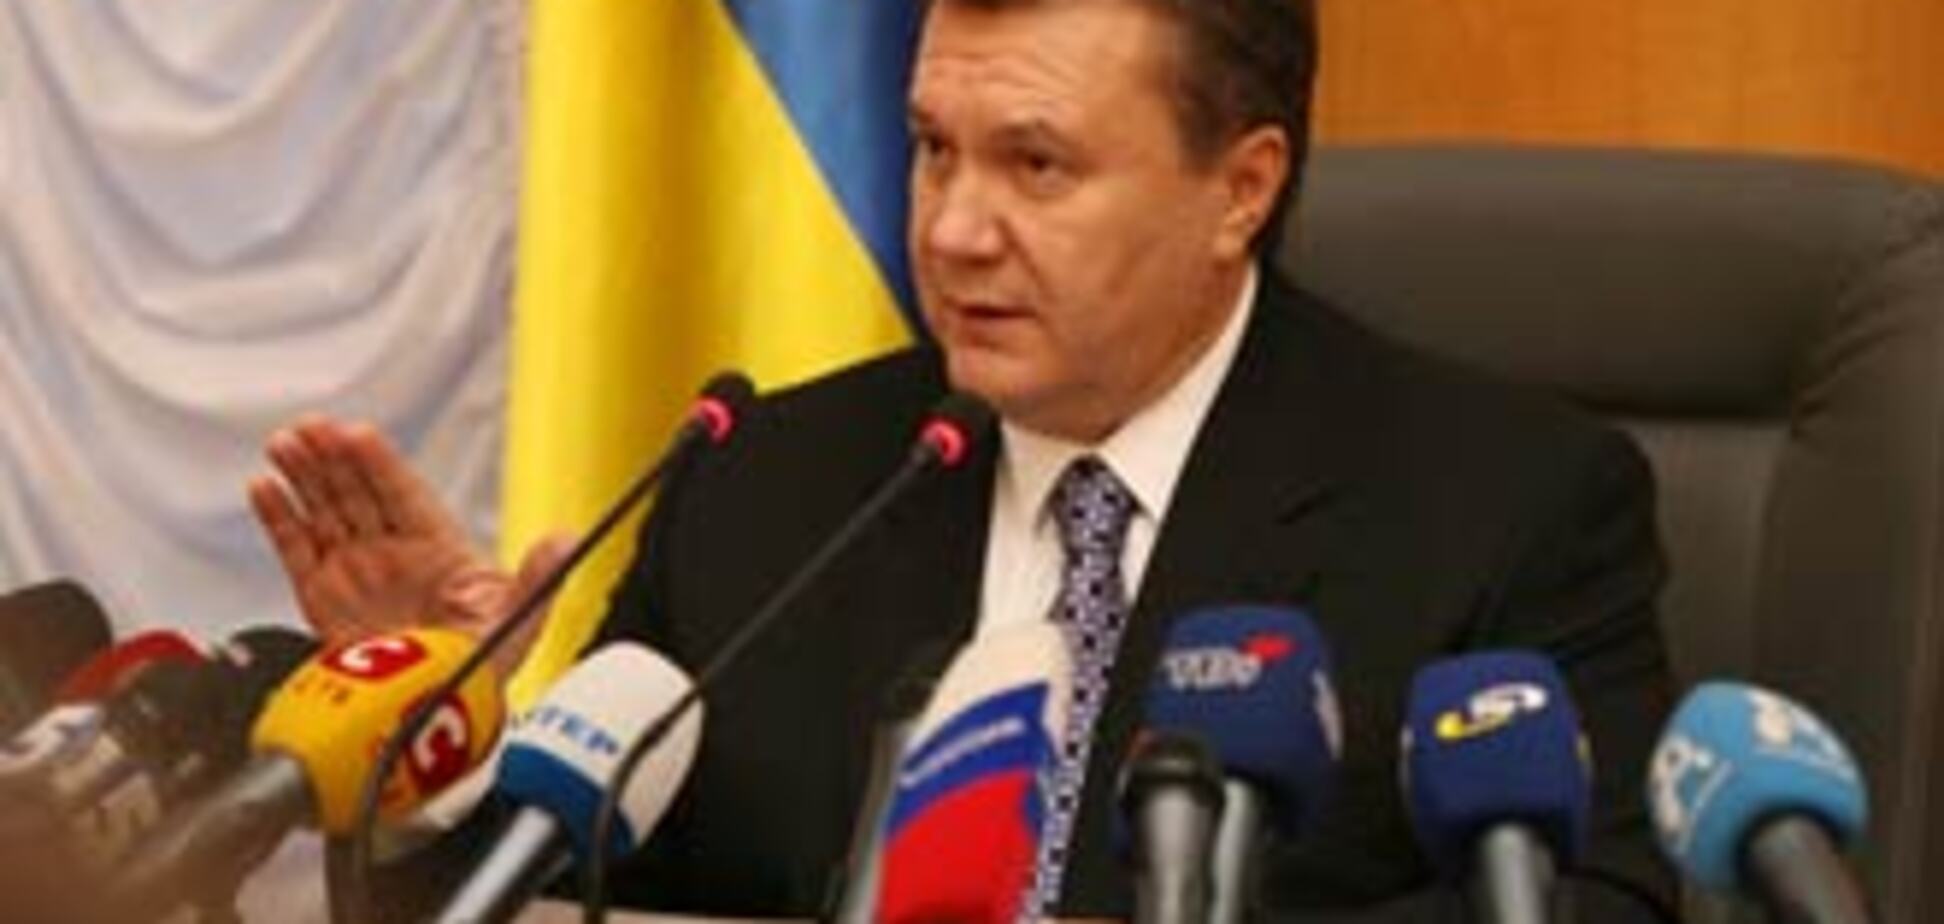 Регионал призывает Януковича уйти